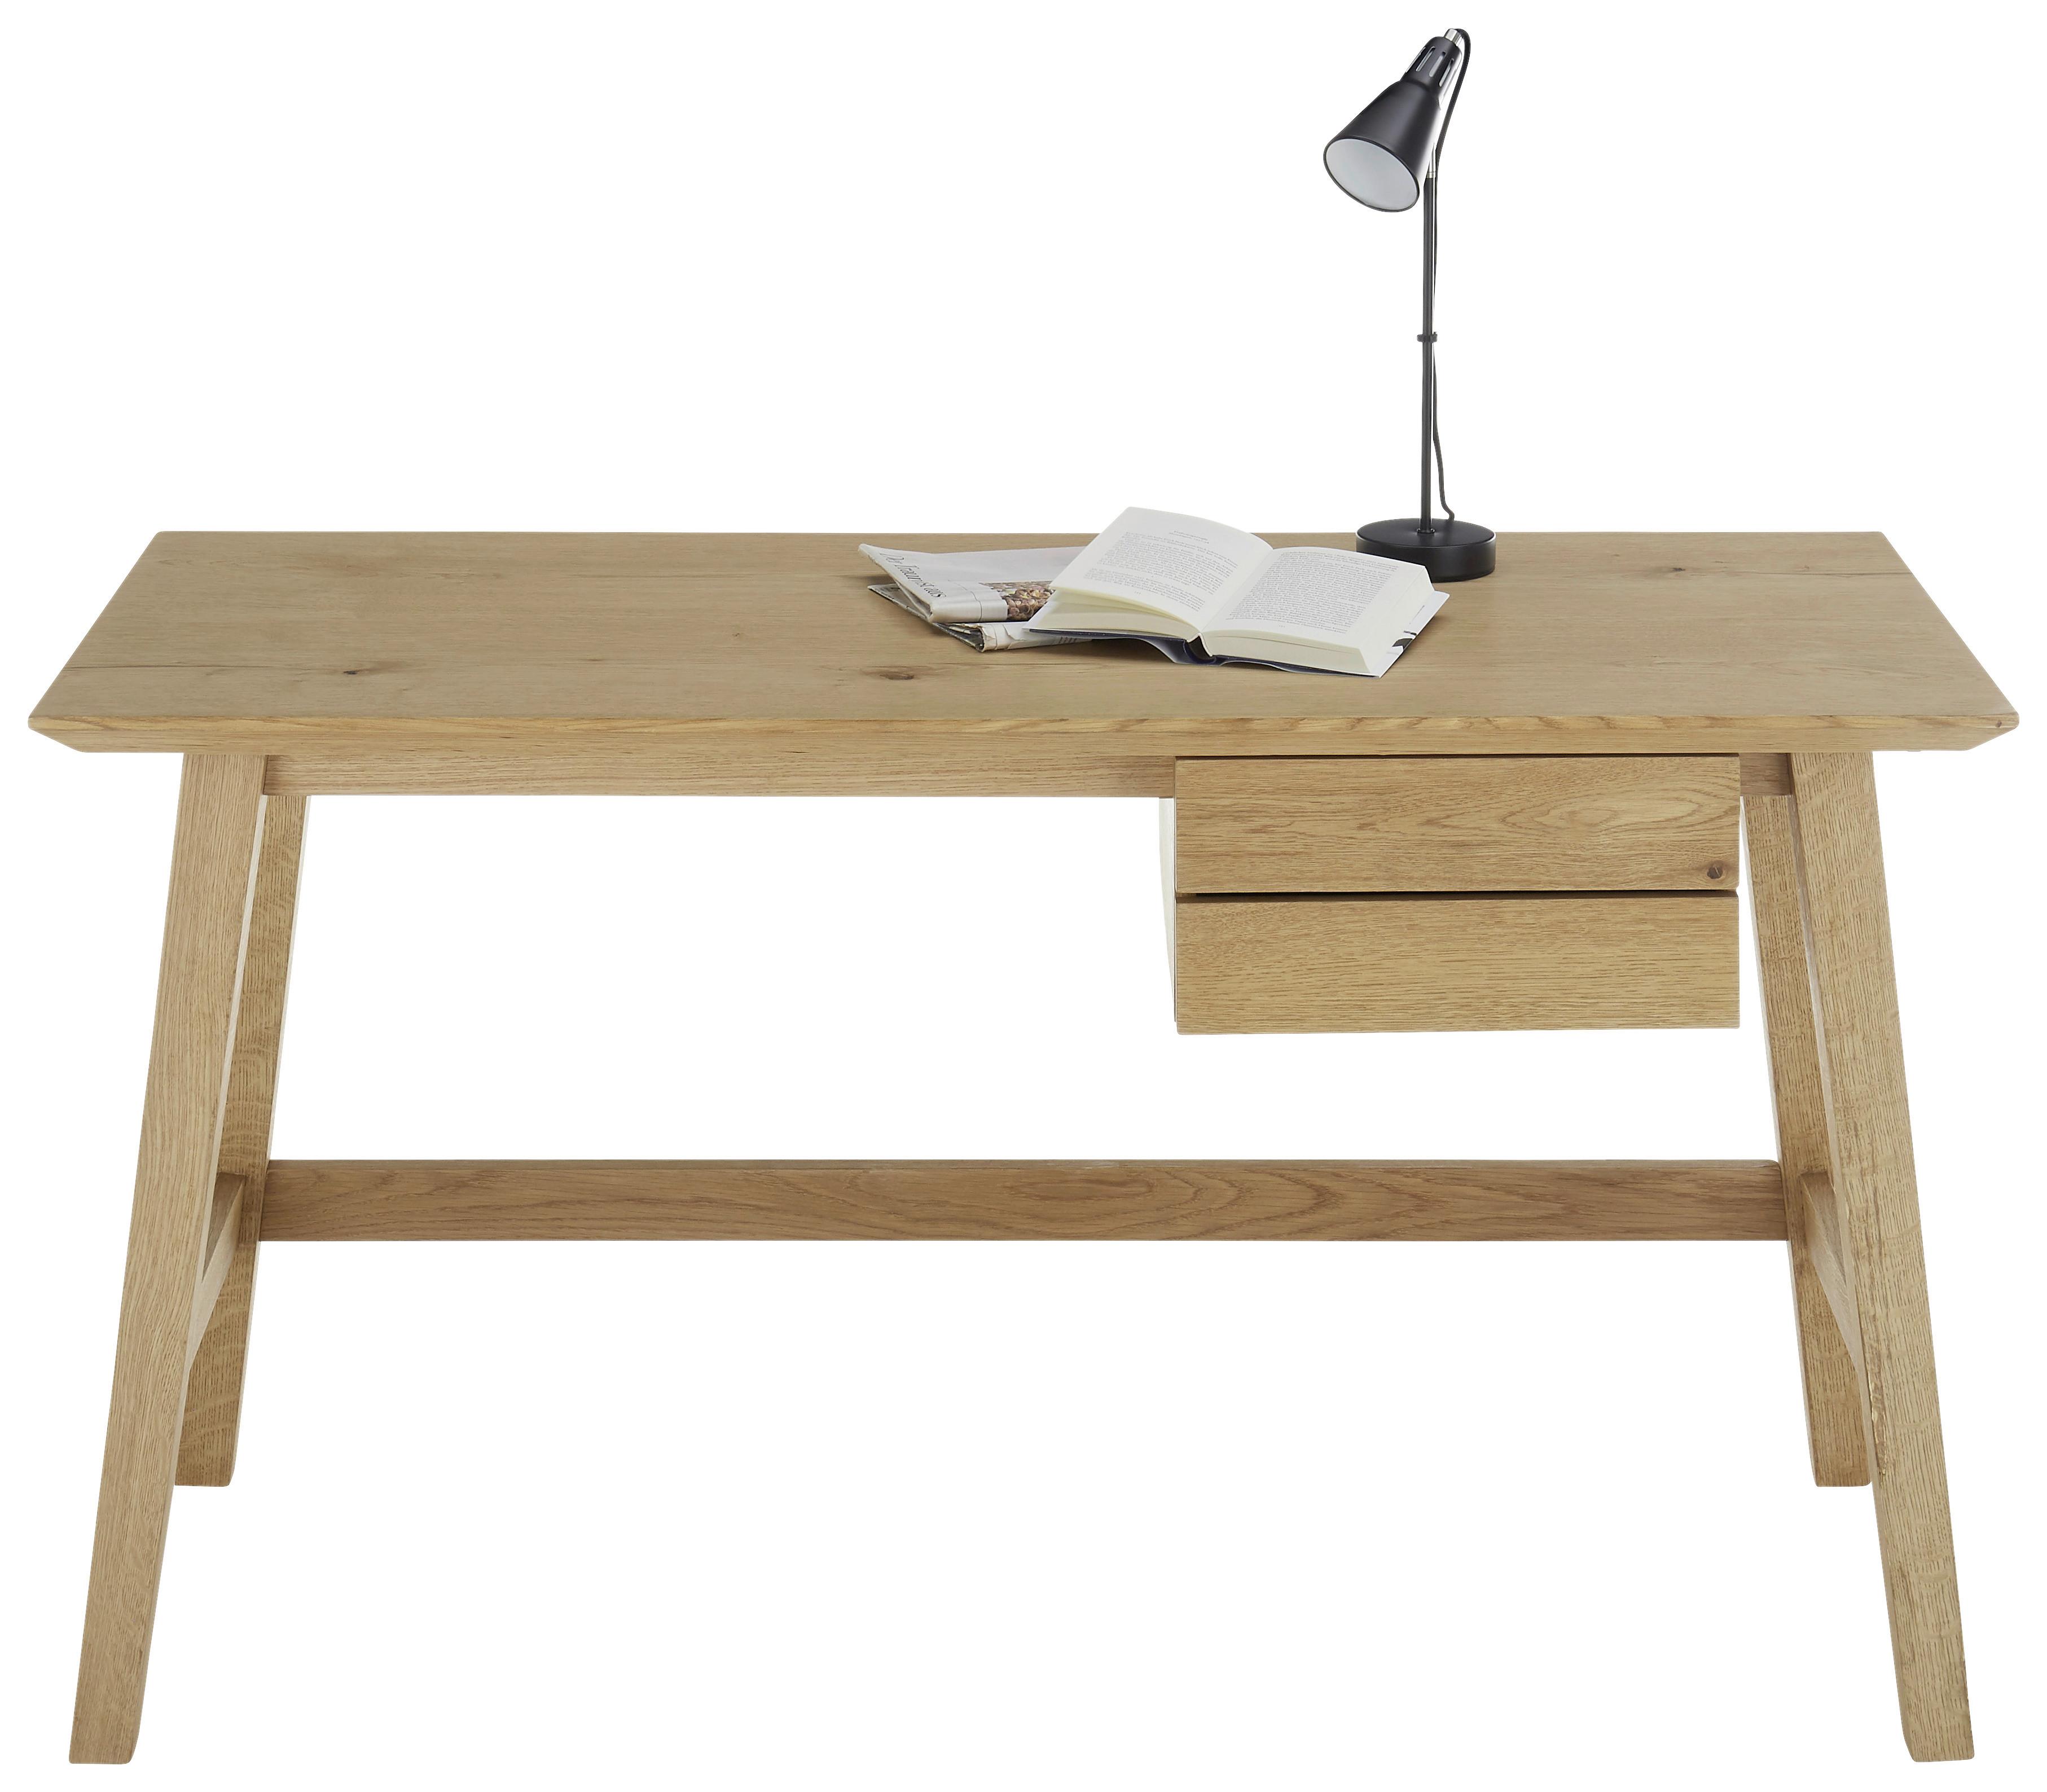 Schreibtisch B 140cm H 75cm Taluca, Eichefarben - Eichefarben/Schwarz, MODERN, Holz/Holzwerkstoff (140/75/60cm)